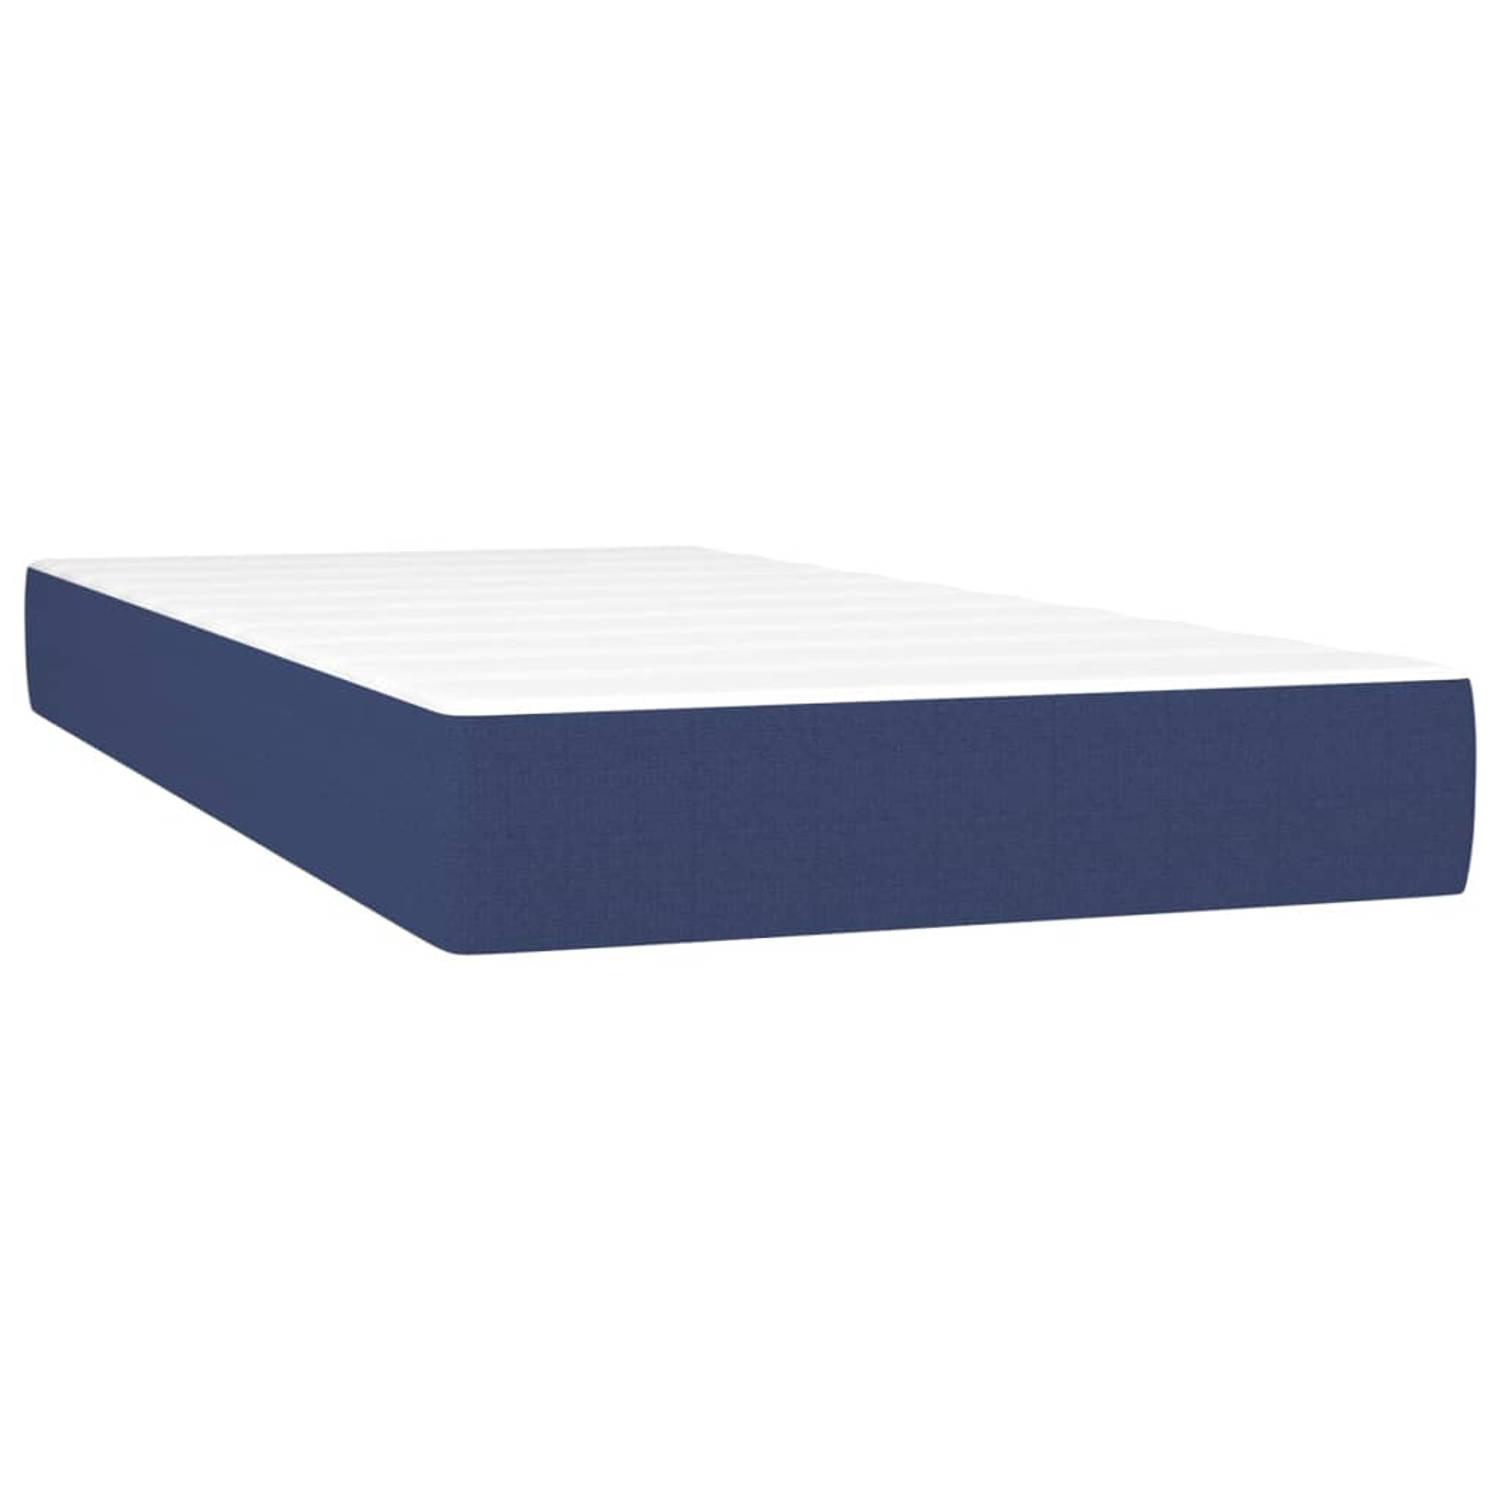 The Living Store Pocketveringmatras - wit en blauw - 90 x 190 x 20 cm - duurzaam materiaal - pocketveren en comfortabel schuim